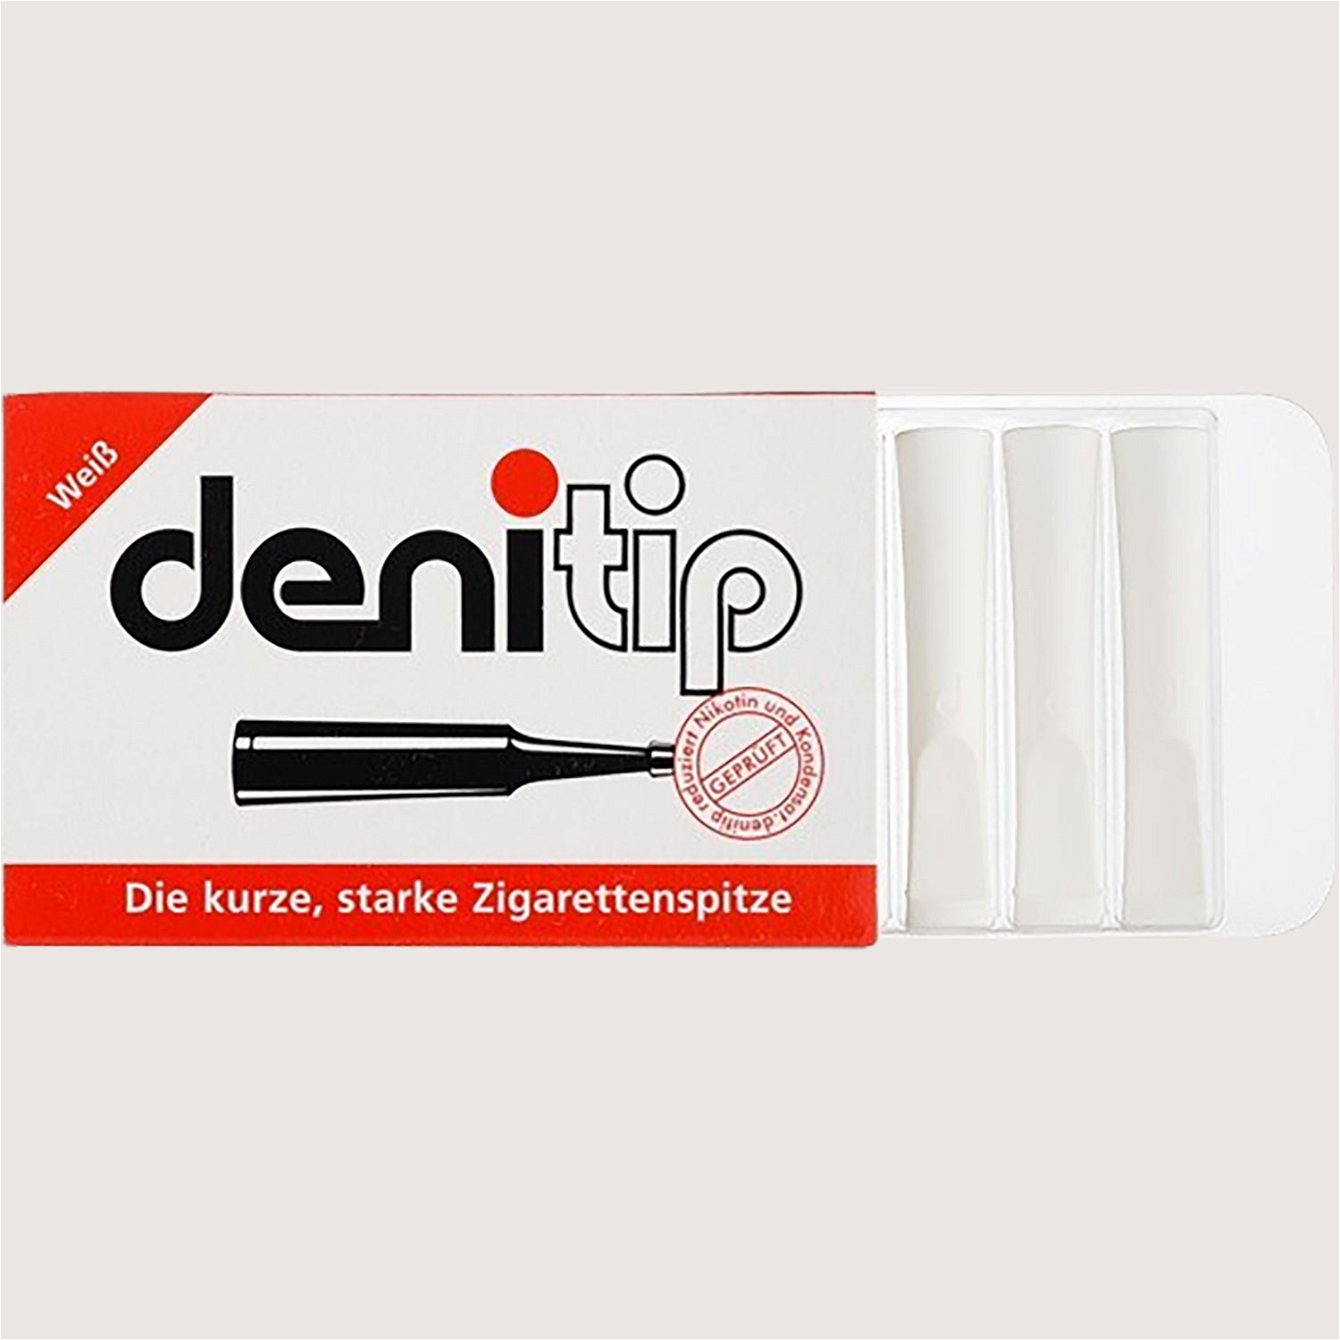 Denicotea Denitip Weiß 1 Spitze